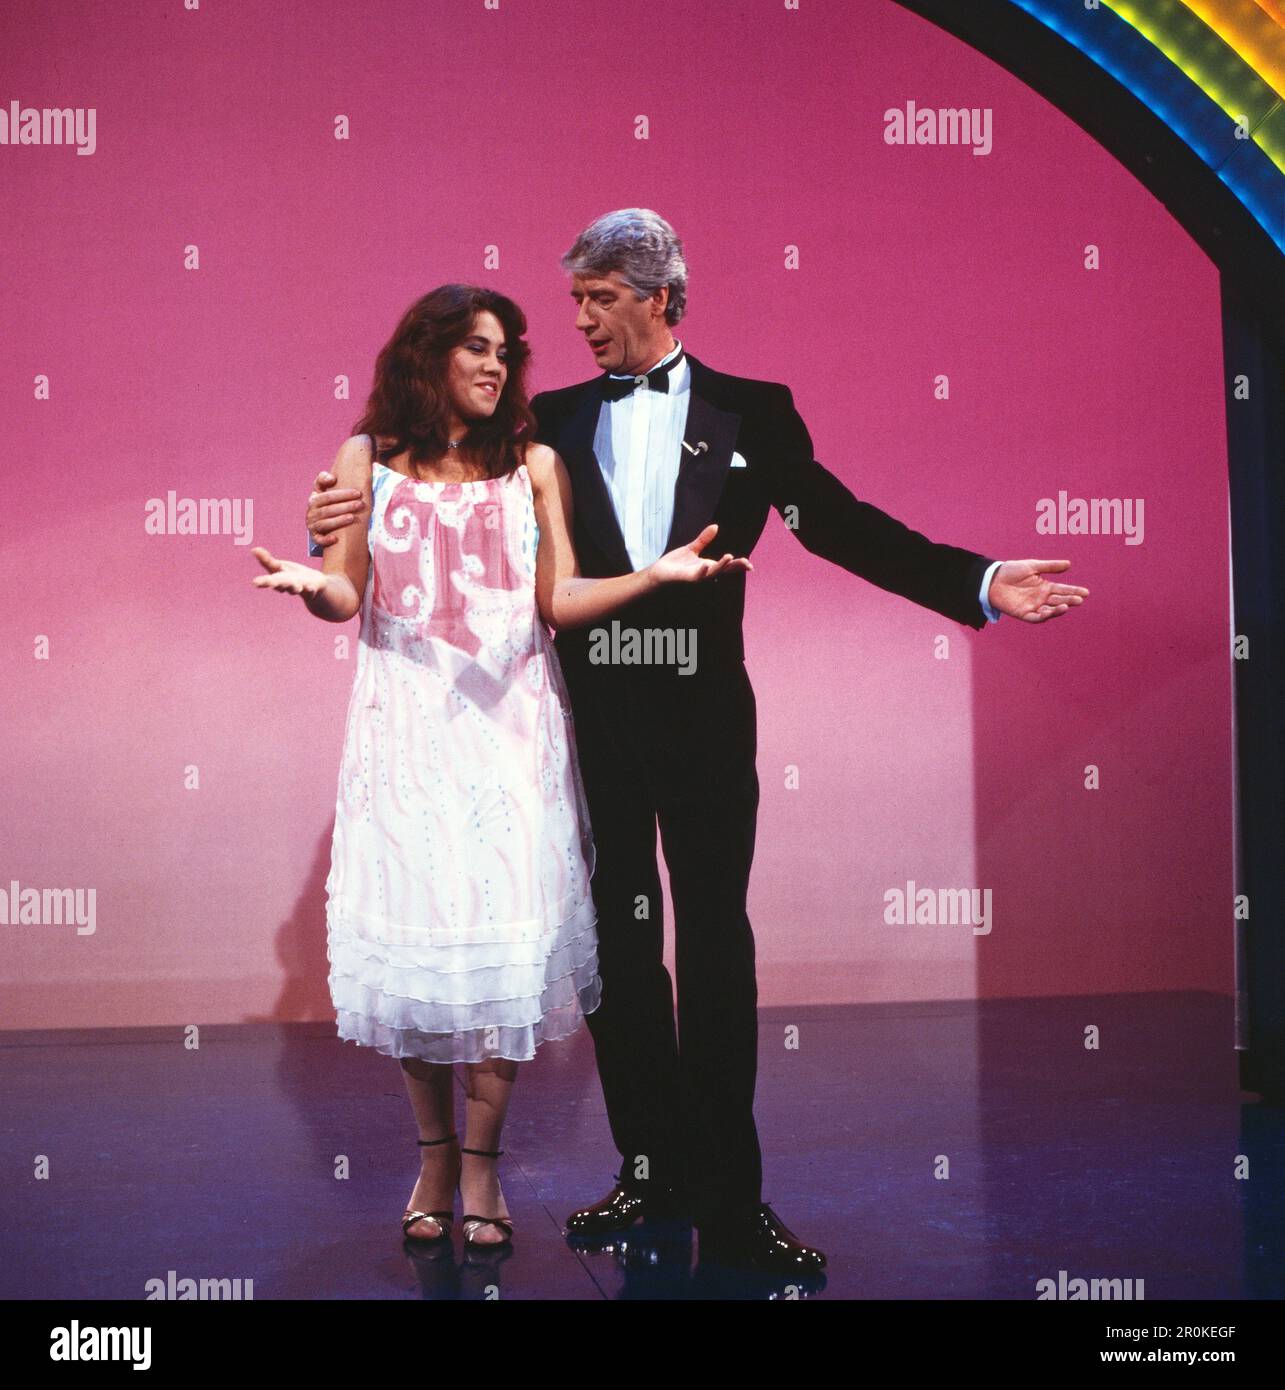 Unter'm Regenbogen, Fernsehspecial zu Silvester 1983, Mitwirkende: Rudi Carrell als Moderator mit Assistentin Tina Riegel, der Eiskunstläuferin. Foto Stock